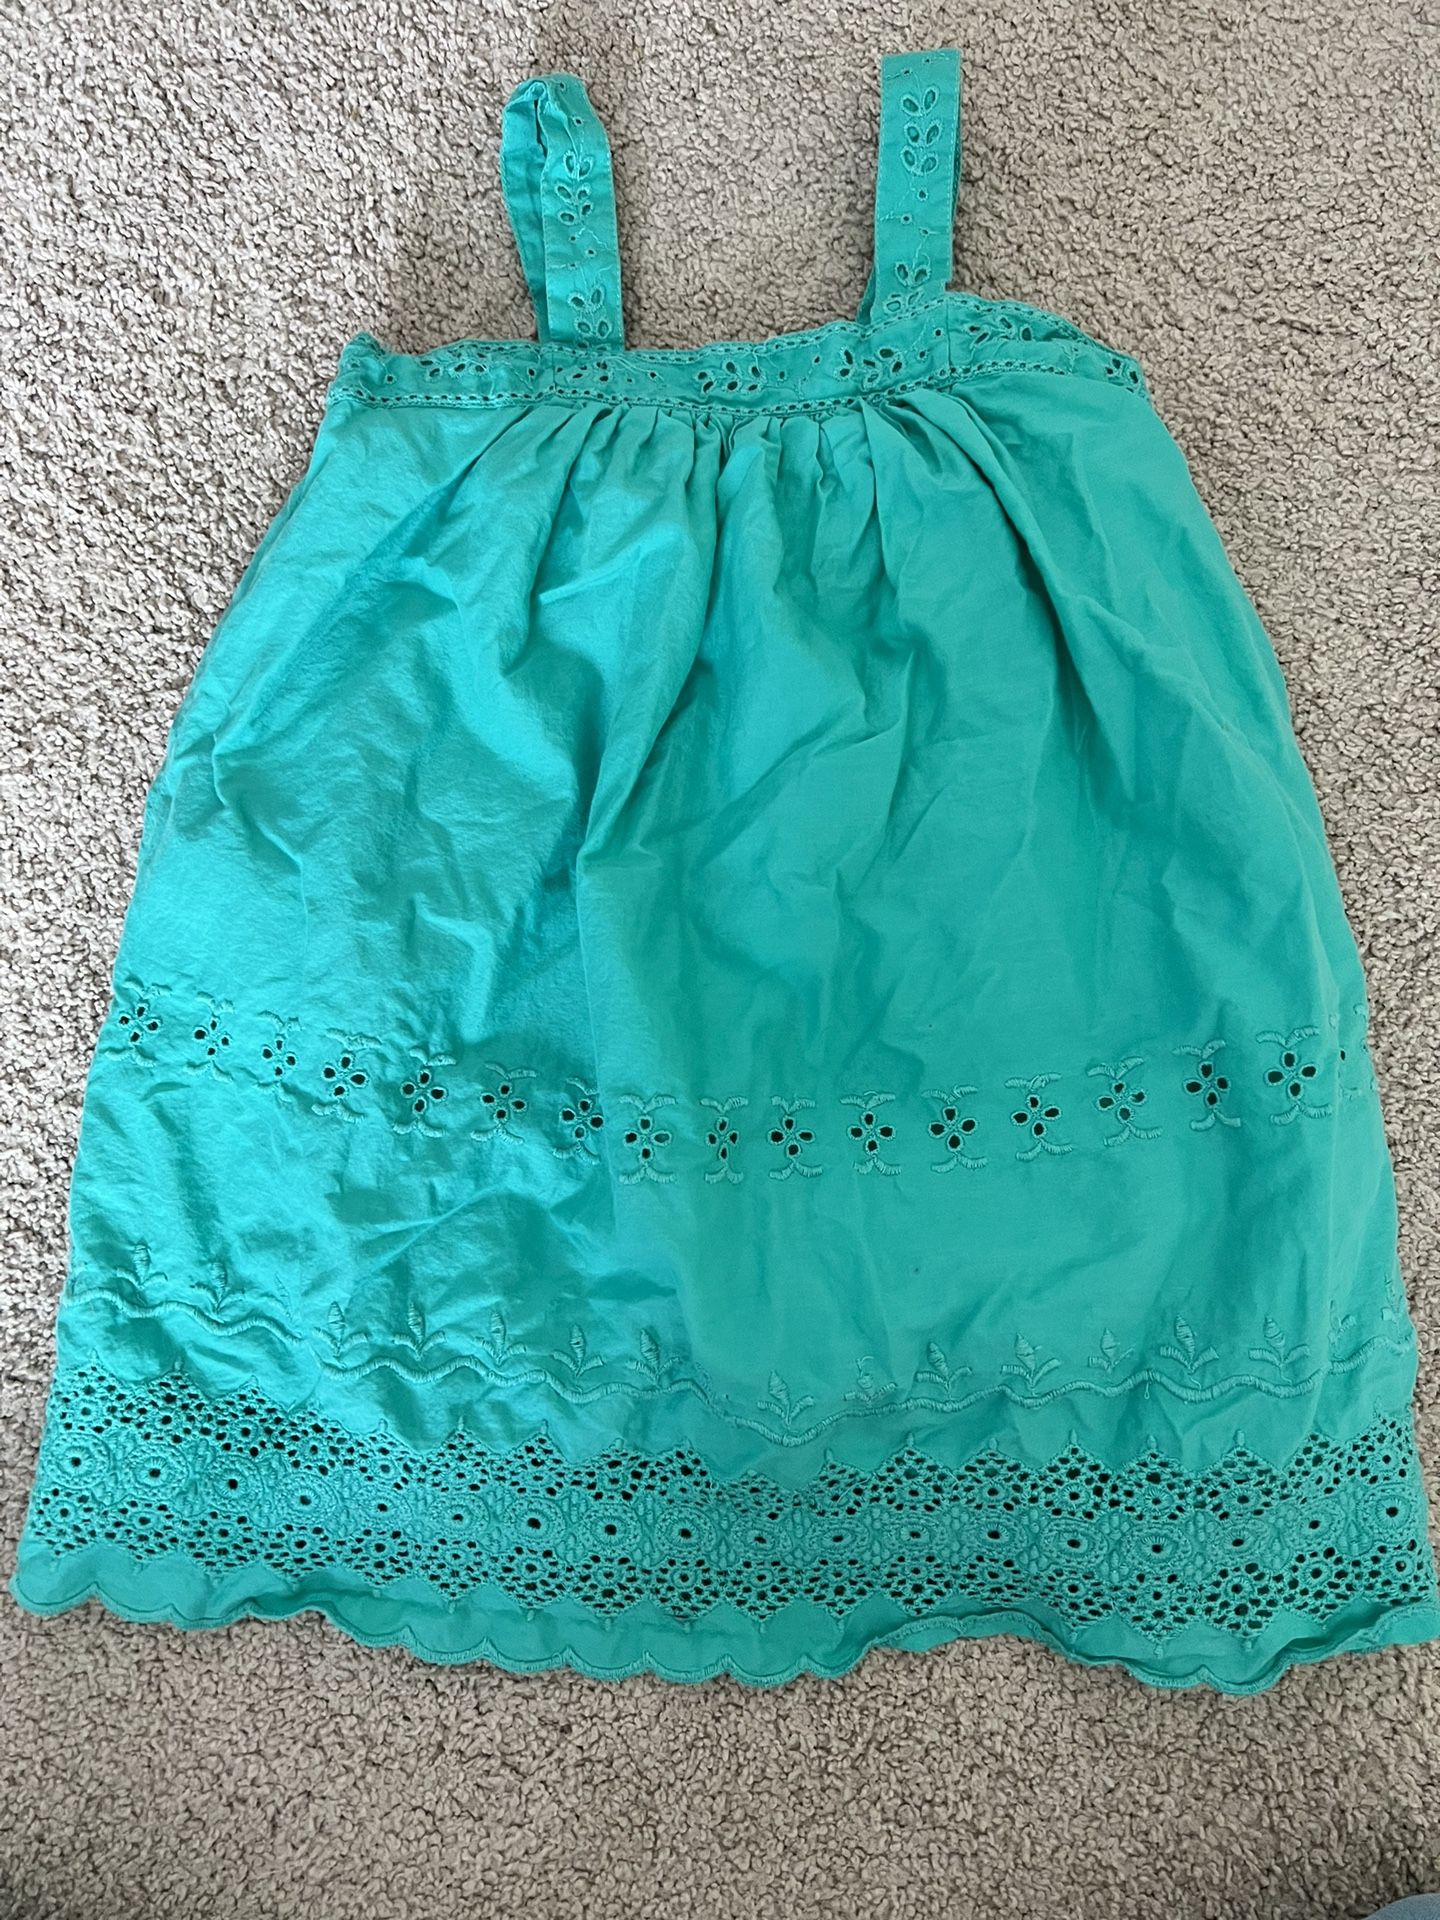 Gap girl summer dress size 4T